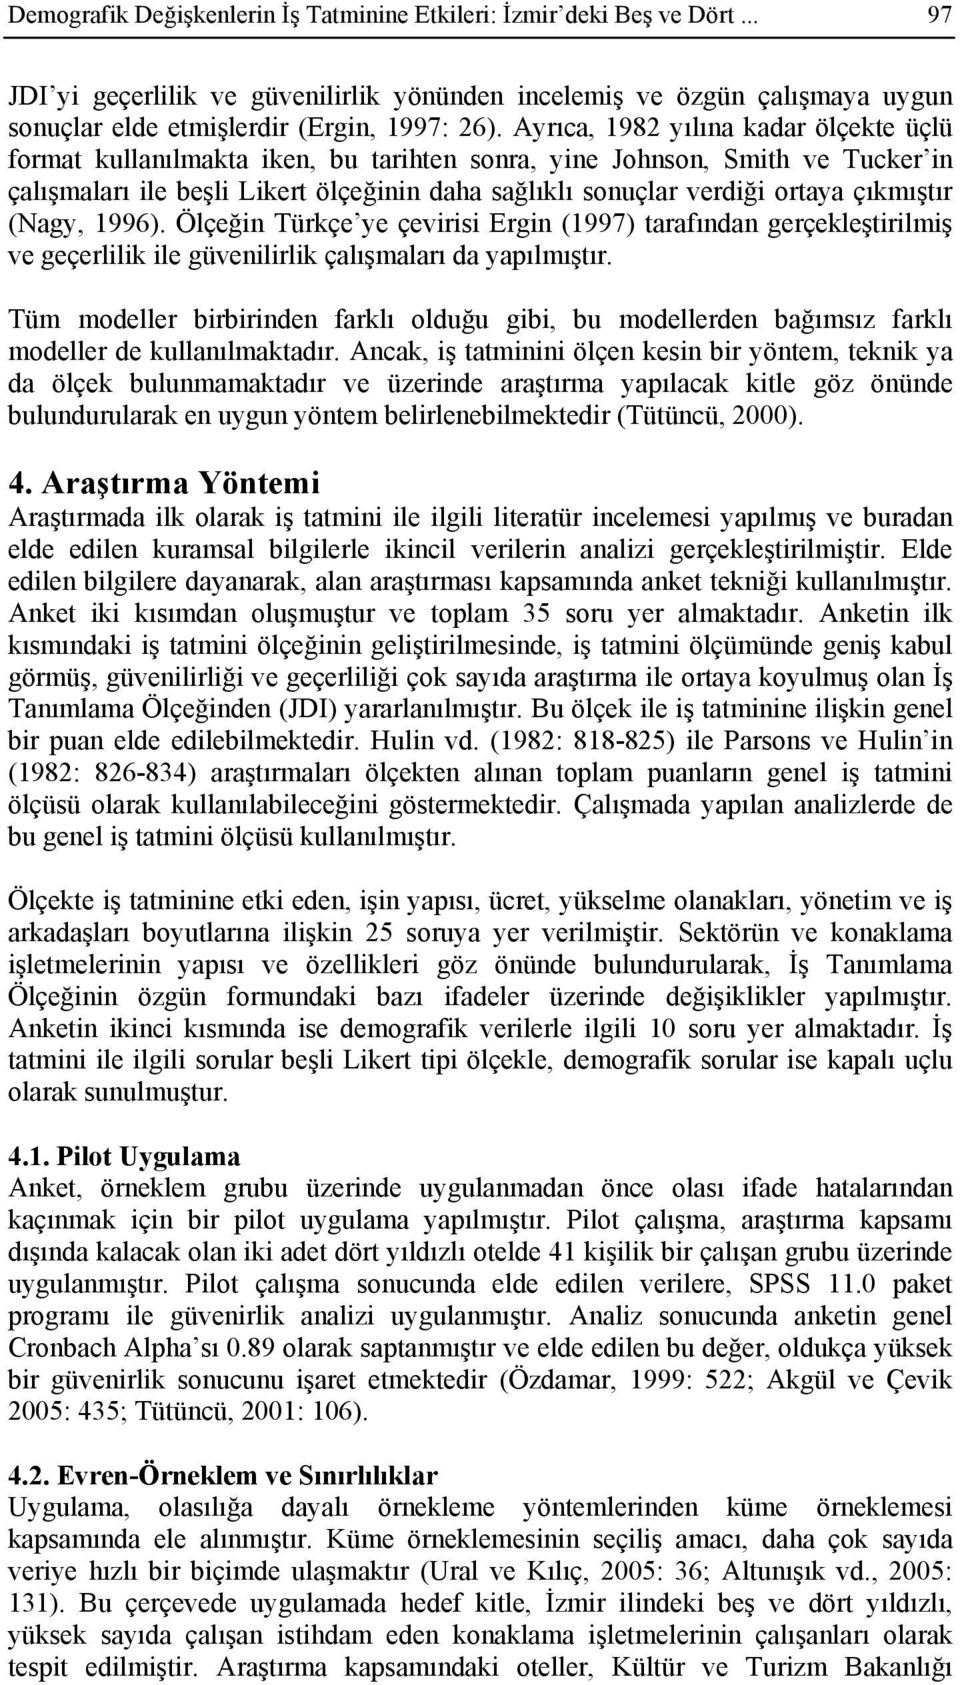 çıkmıştır (Nagy, 1996). Ölçeğin Türkçe ye çevirisi Ergin (1997) tarafından gerçekleştirilmiş ve geçerlilik ile güvenilirlik çalışmaları da yapılmıştır.